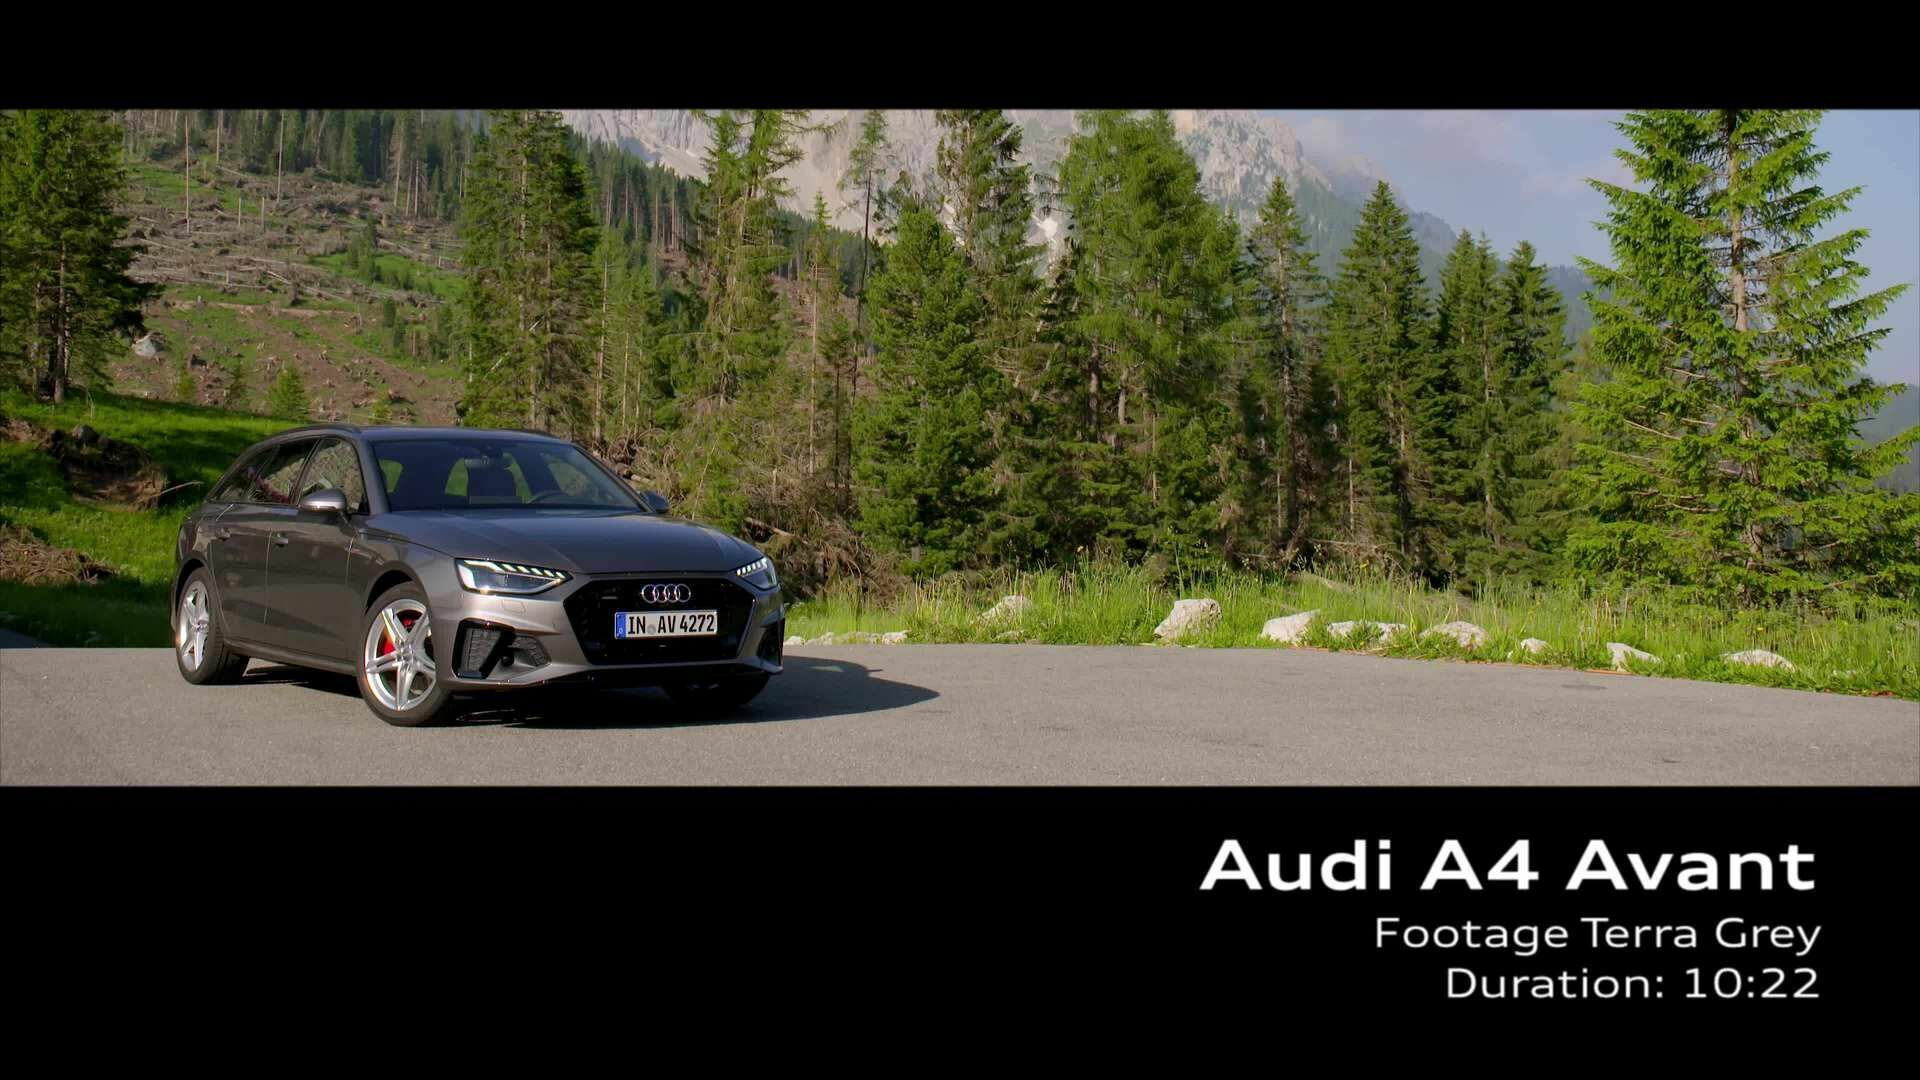 Audi A4 Avant TDI Footage Terra Grey (footage)